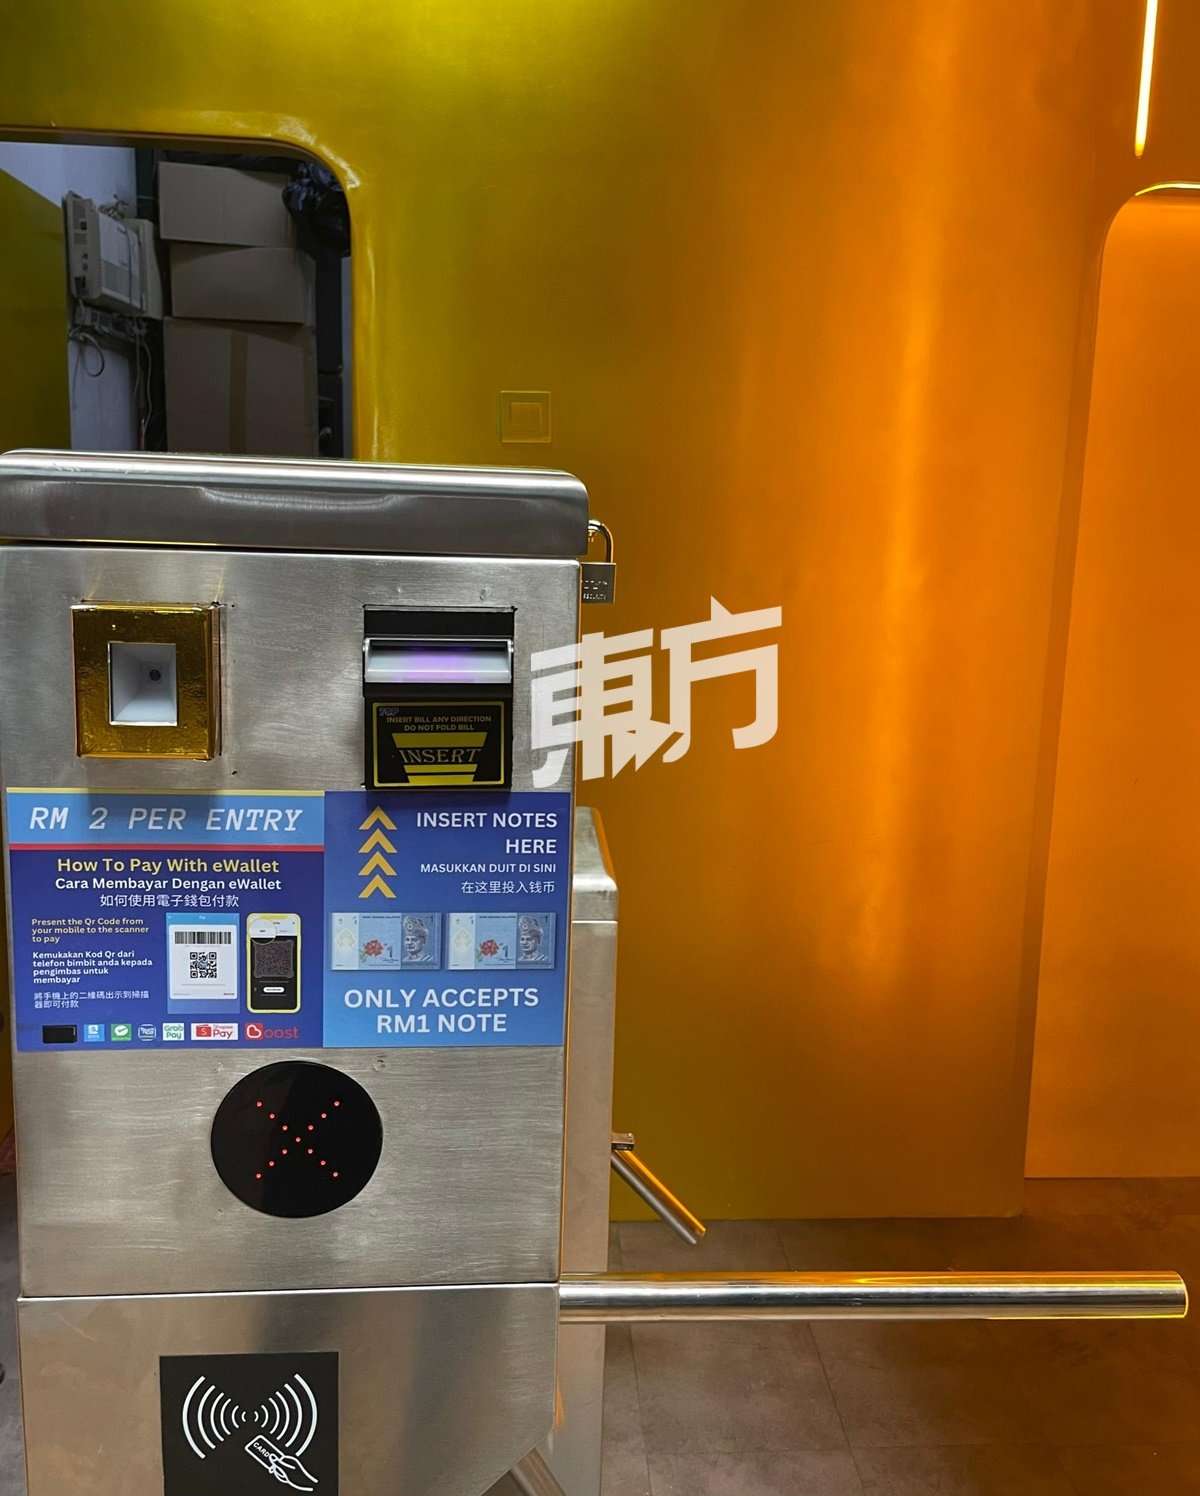 访客可以透过现钞或电子钱包付费2令吉后使用黄金厕所。